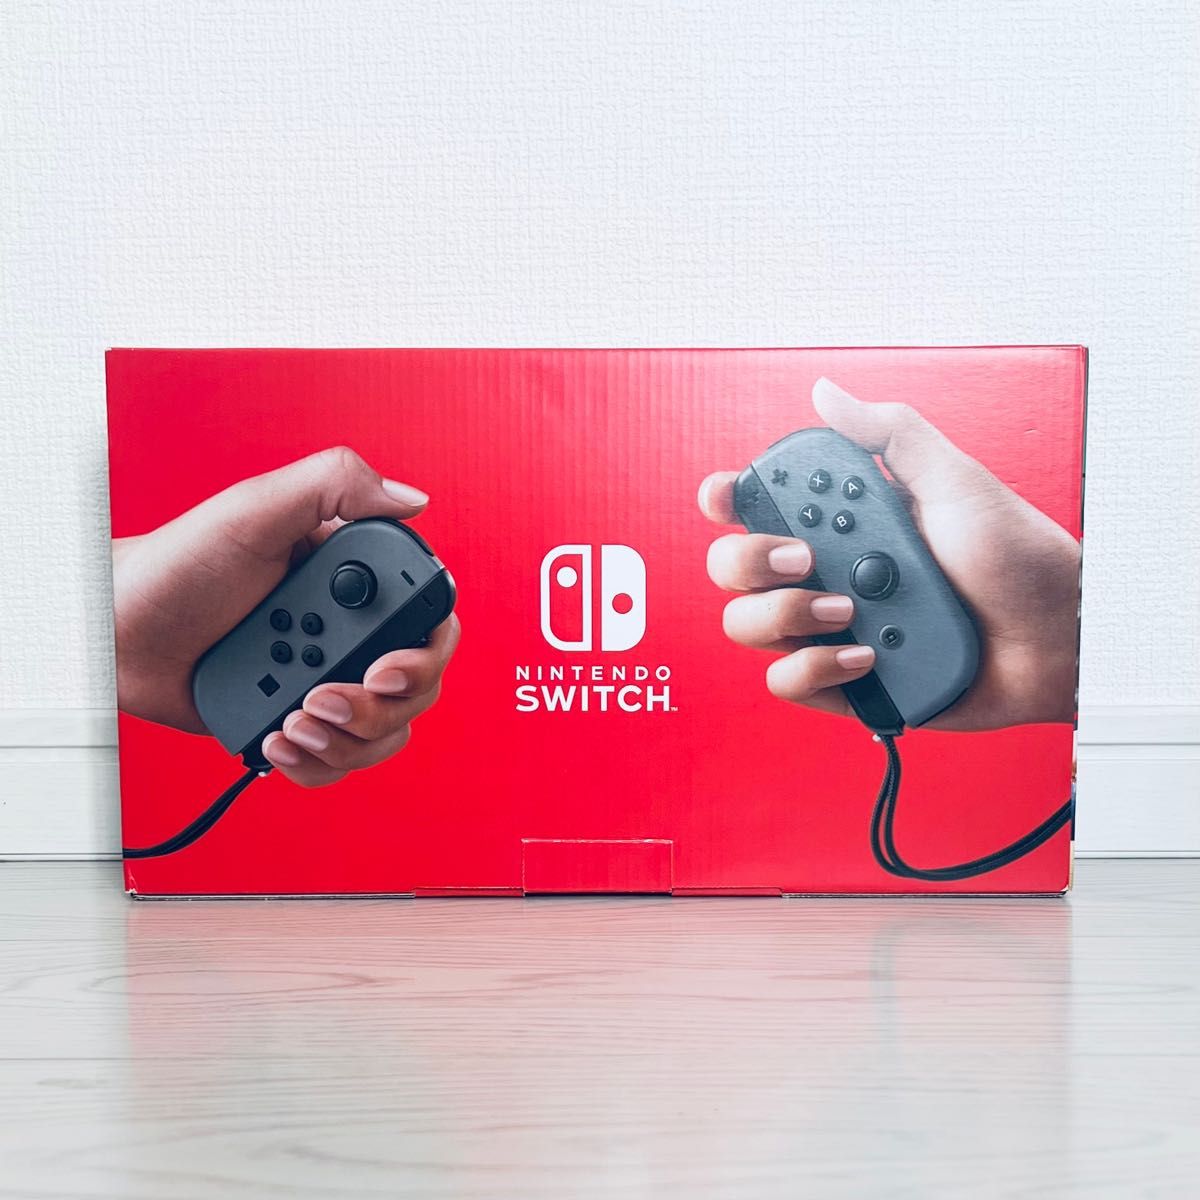 【中古美品】Nintendo Switch グレー 本体 【ソフト付】ニンテンドー